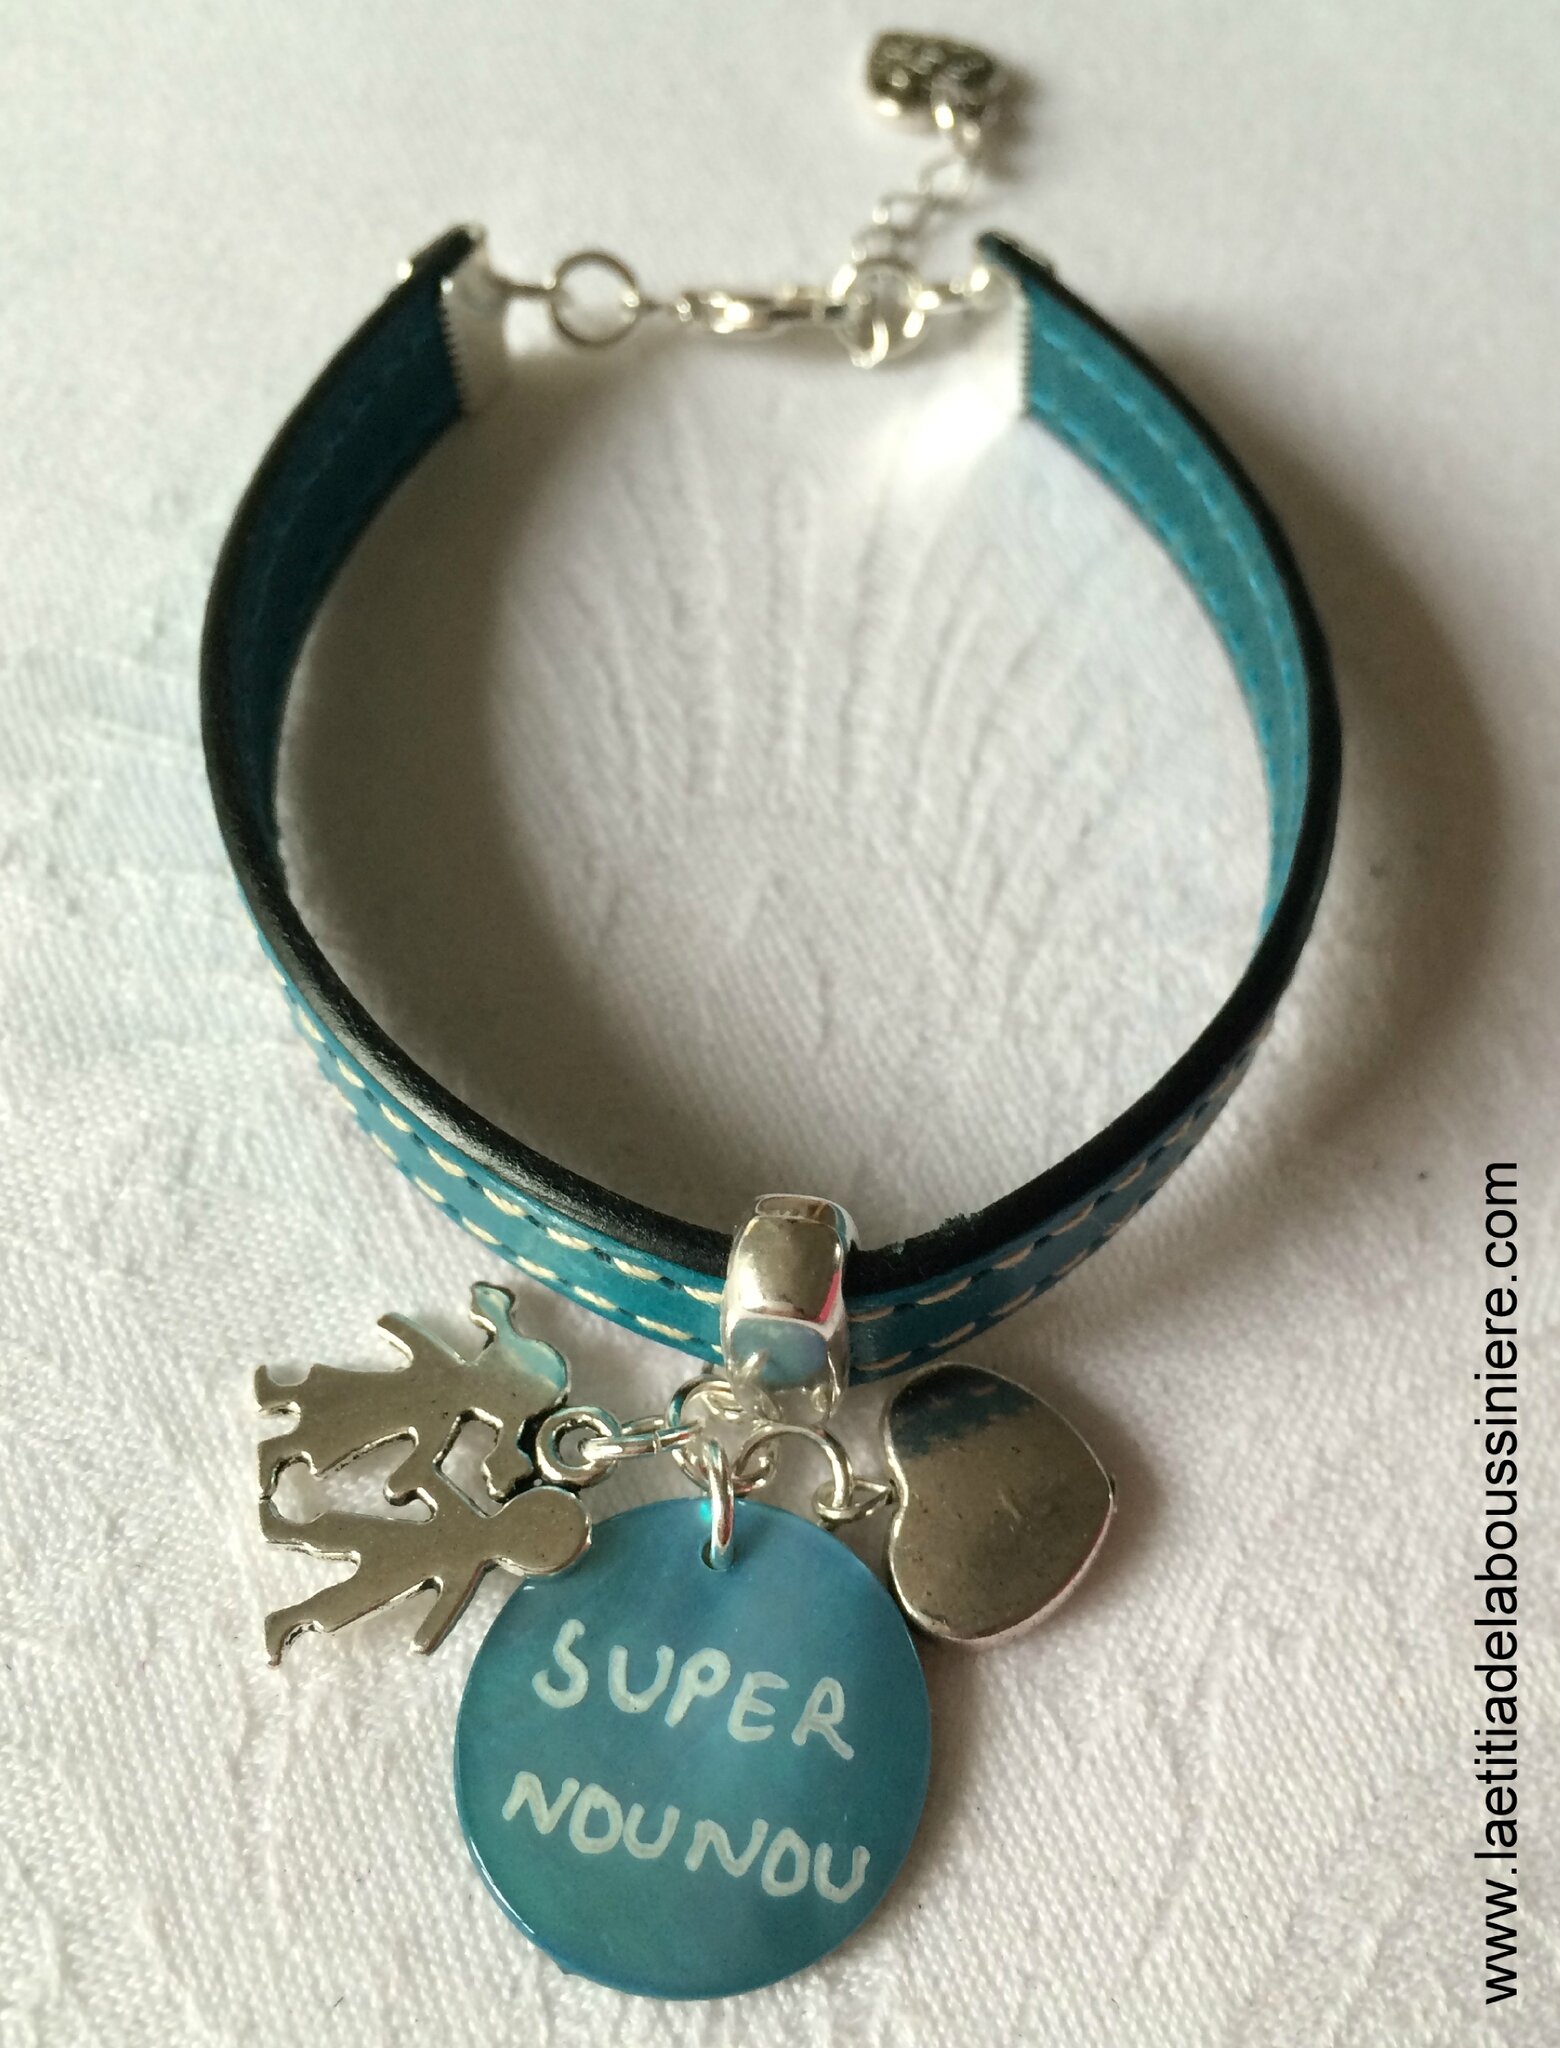 Bracelet de Super Nounou (turquoise) - 22 €